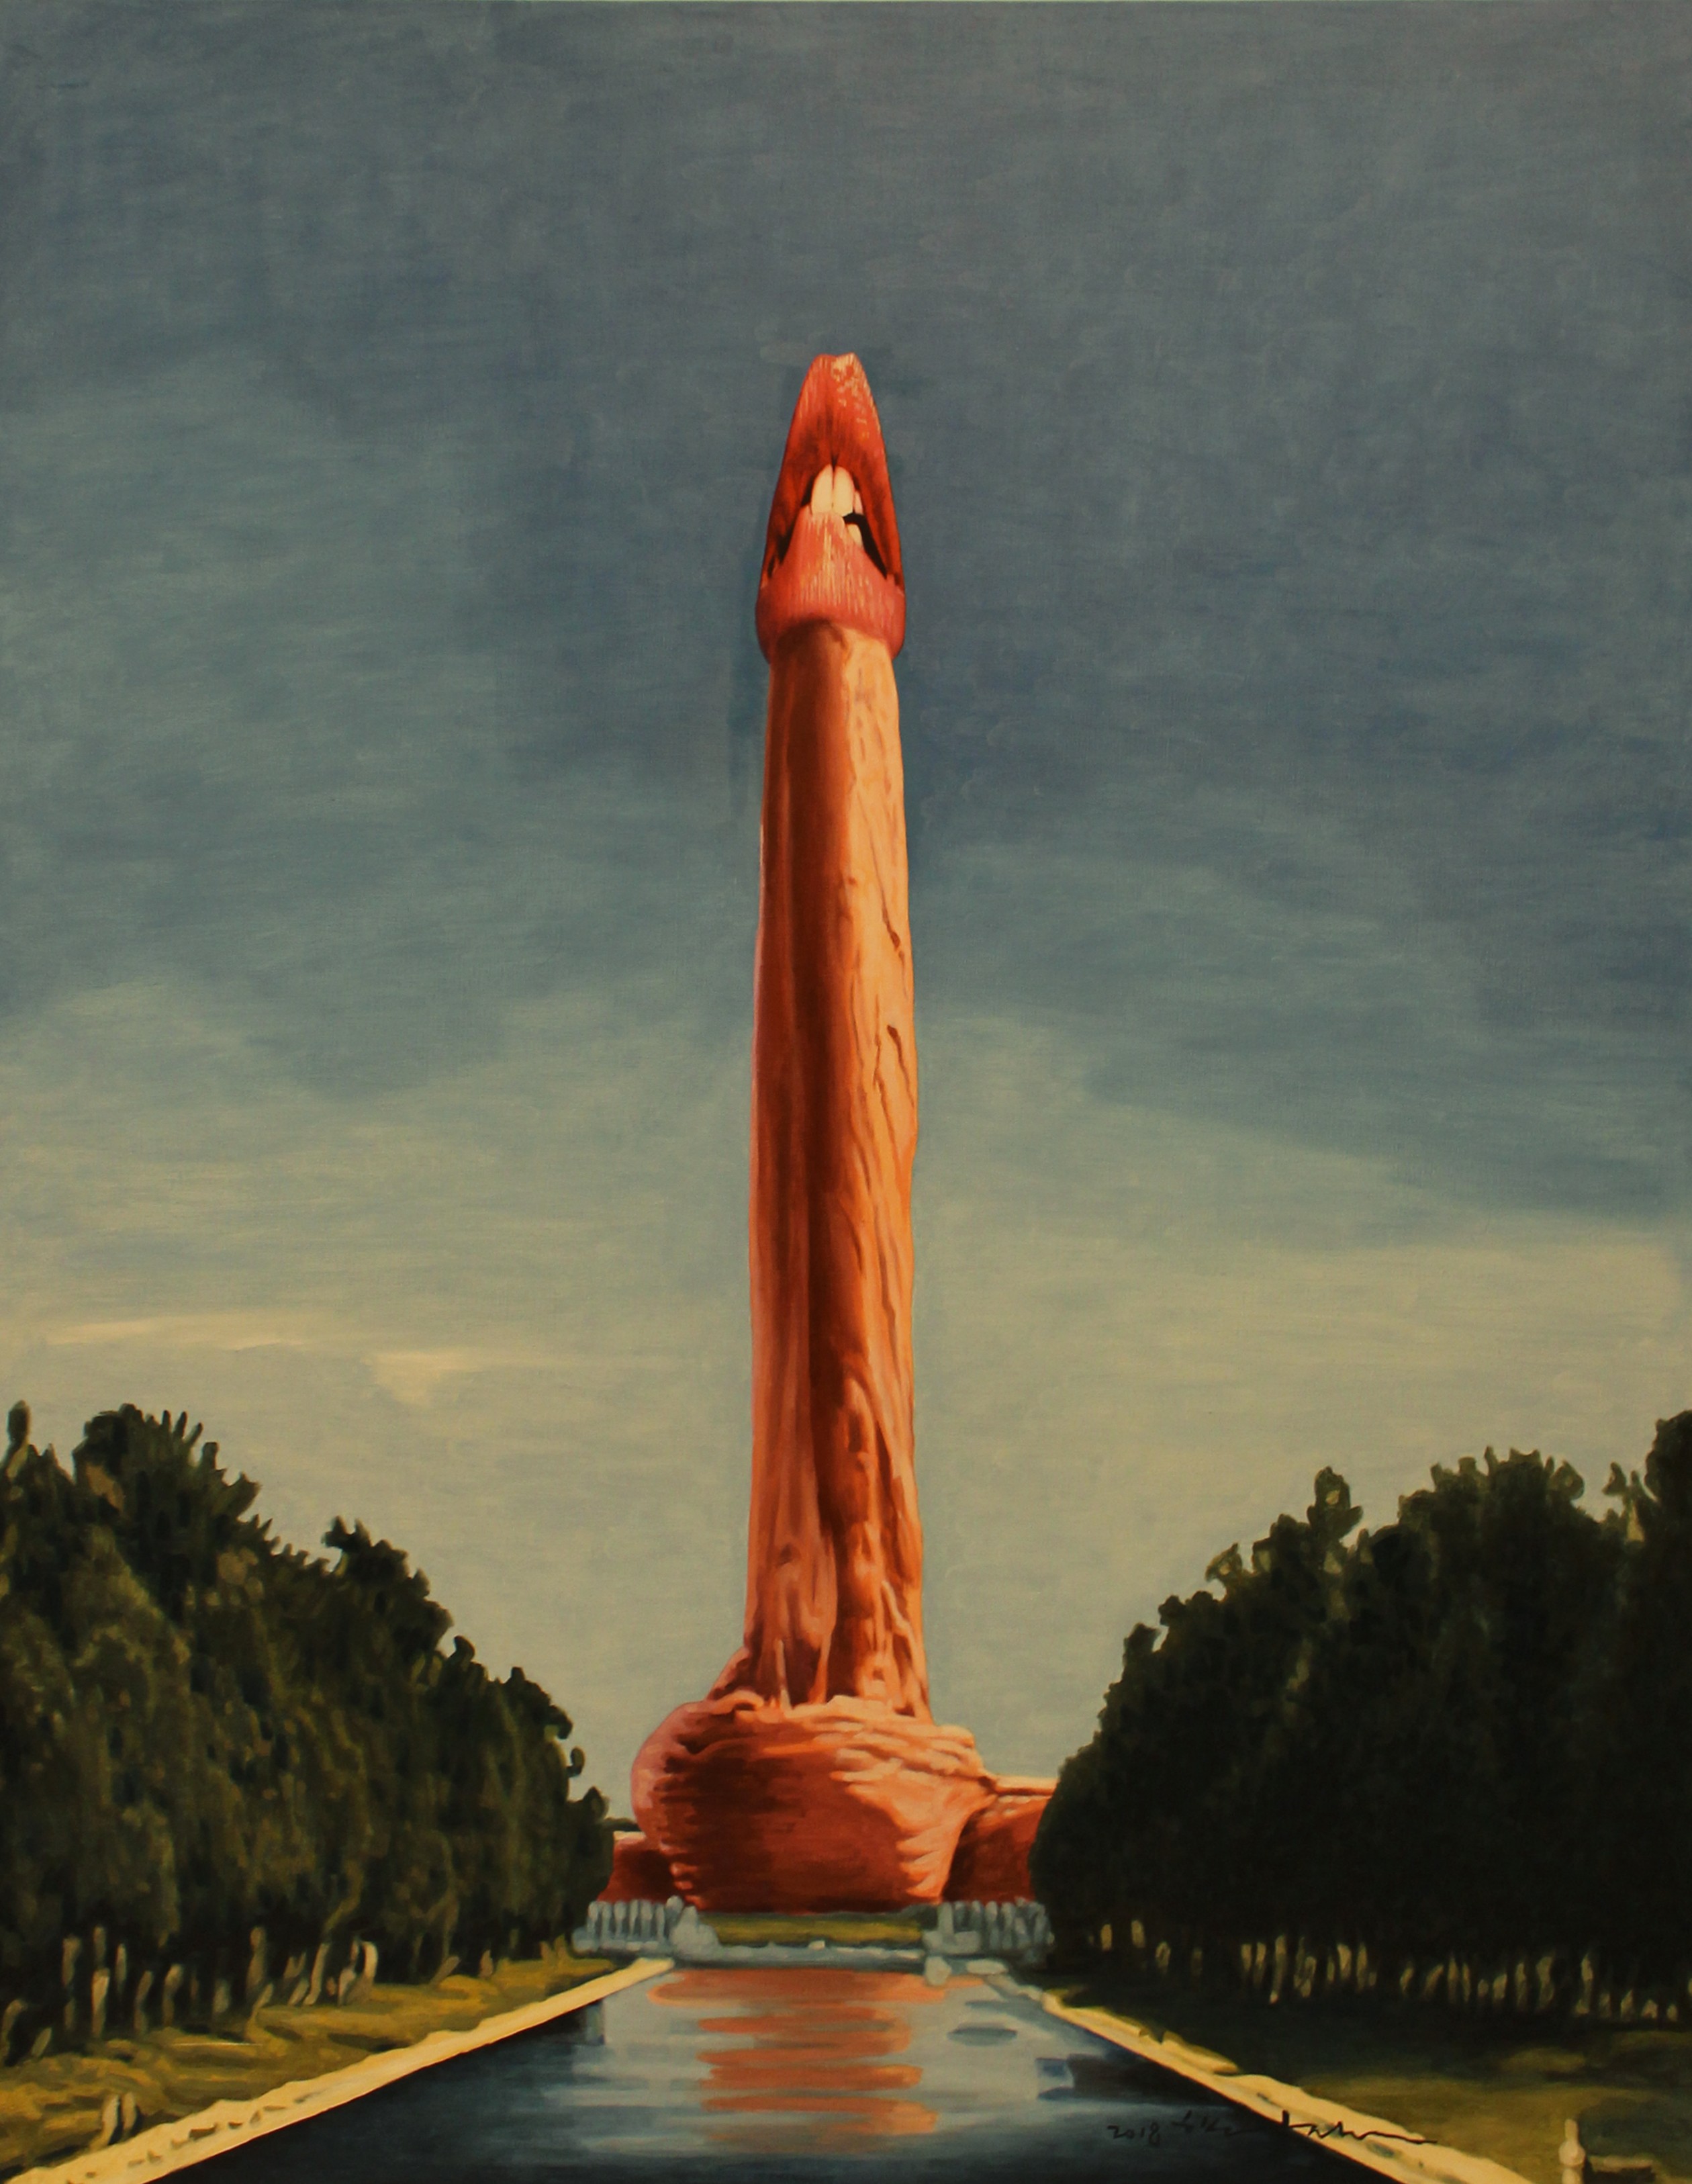 Hak-chul Shin | Your Portrait - Washington Monument | Art Basel